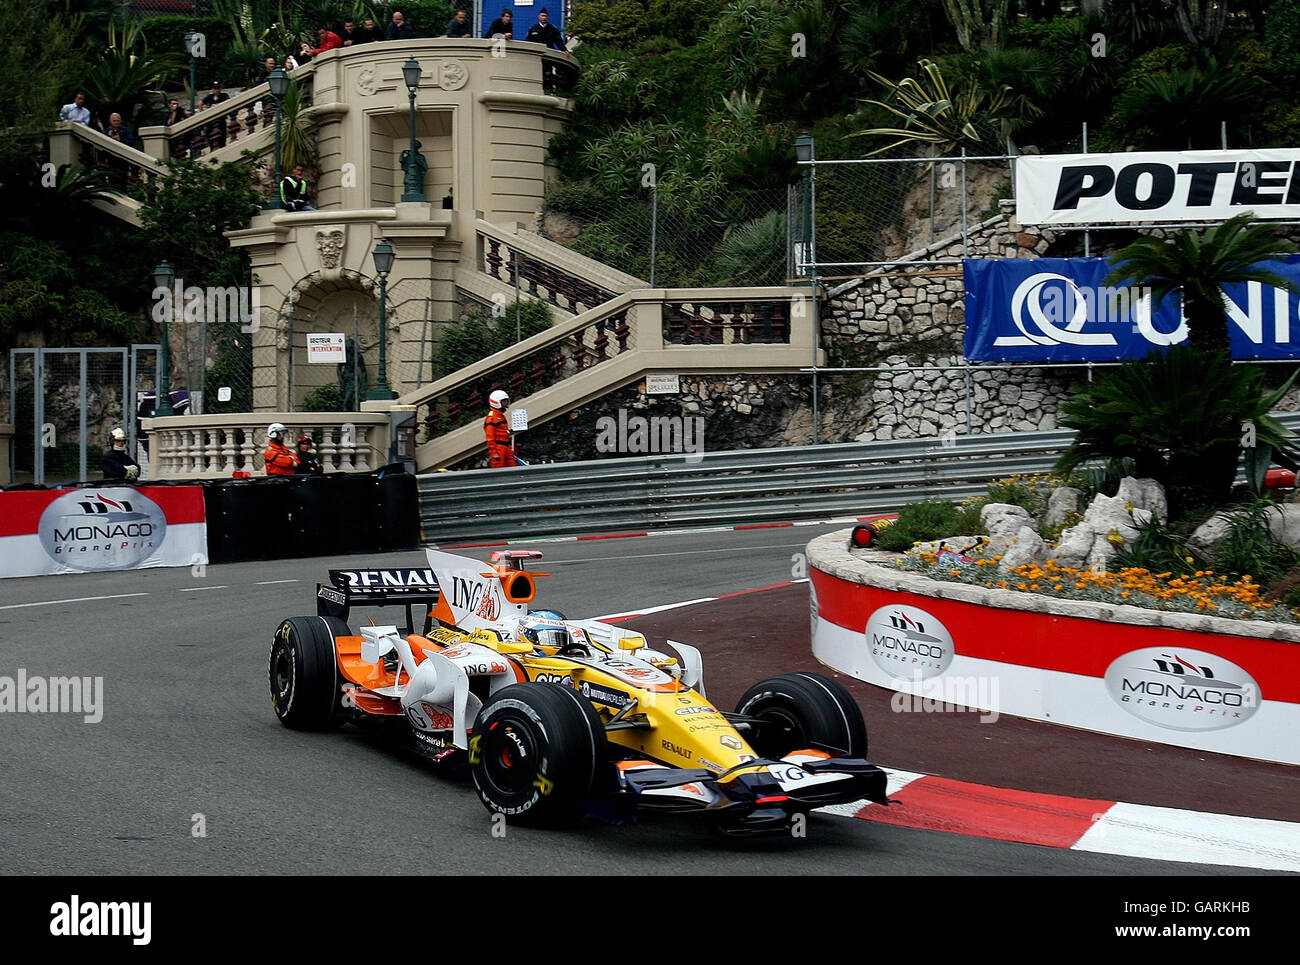 Formel-1-Autorennen - Großer Preis Von Monaco - Qualifikation - Monte Carlo. Fernando Alonso im Renault rundet die Lowes-Haarnadel beim Qualifying in Monte Carlo, Monaco. Stockfoto